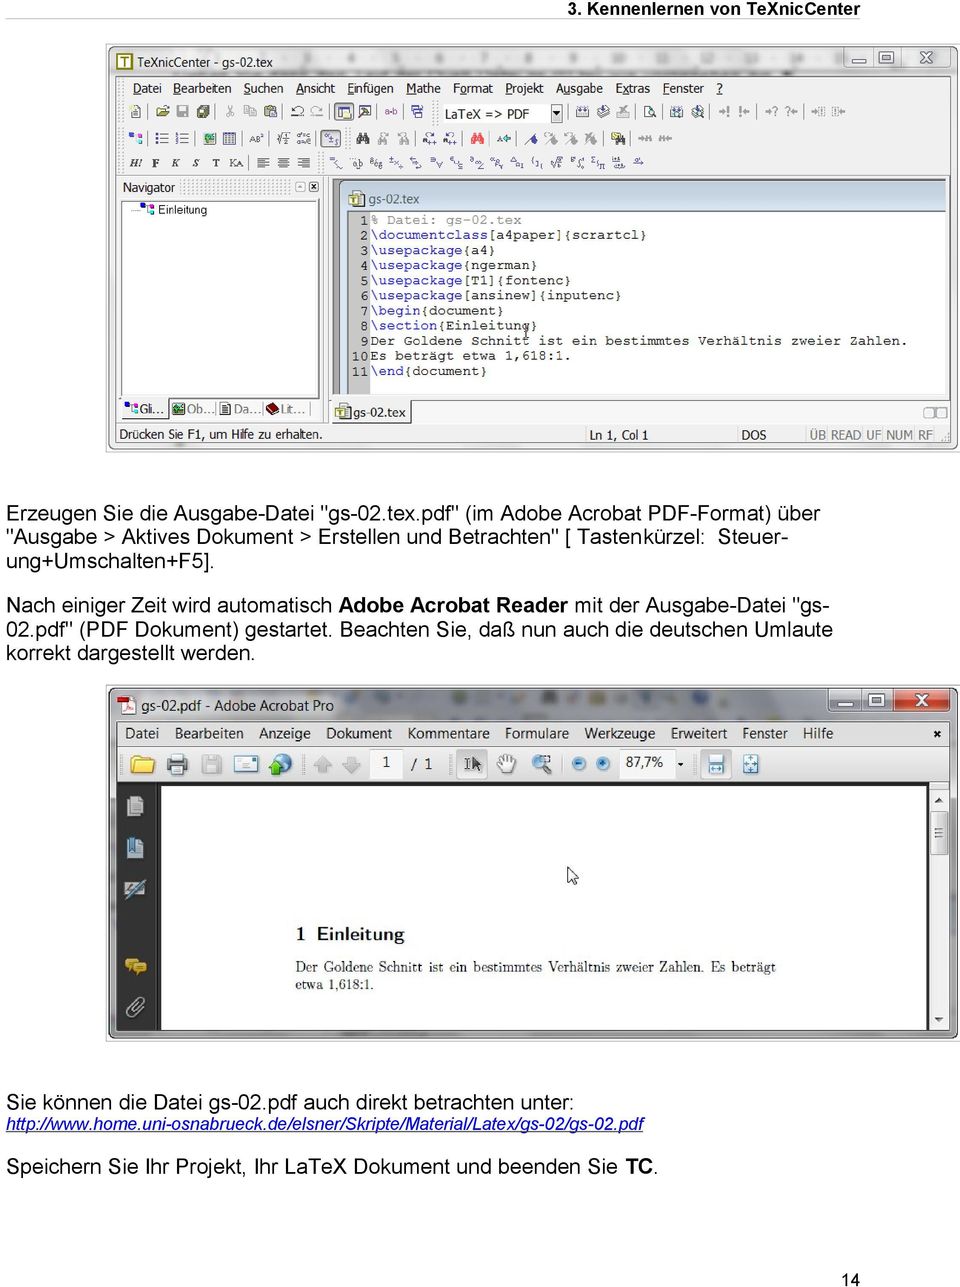 Nach einiger Zeit wird automatisch Adobe Acrobat Reader mit der Ausgabe-Datei "gs- 02.pdf" (PDF Dokument) gestartet.